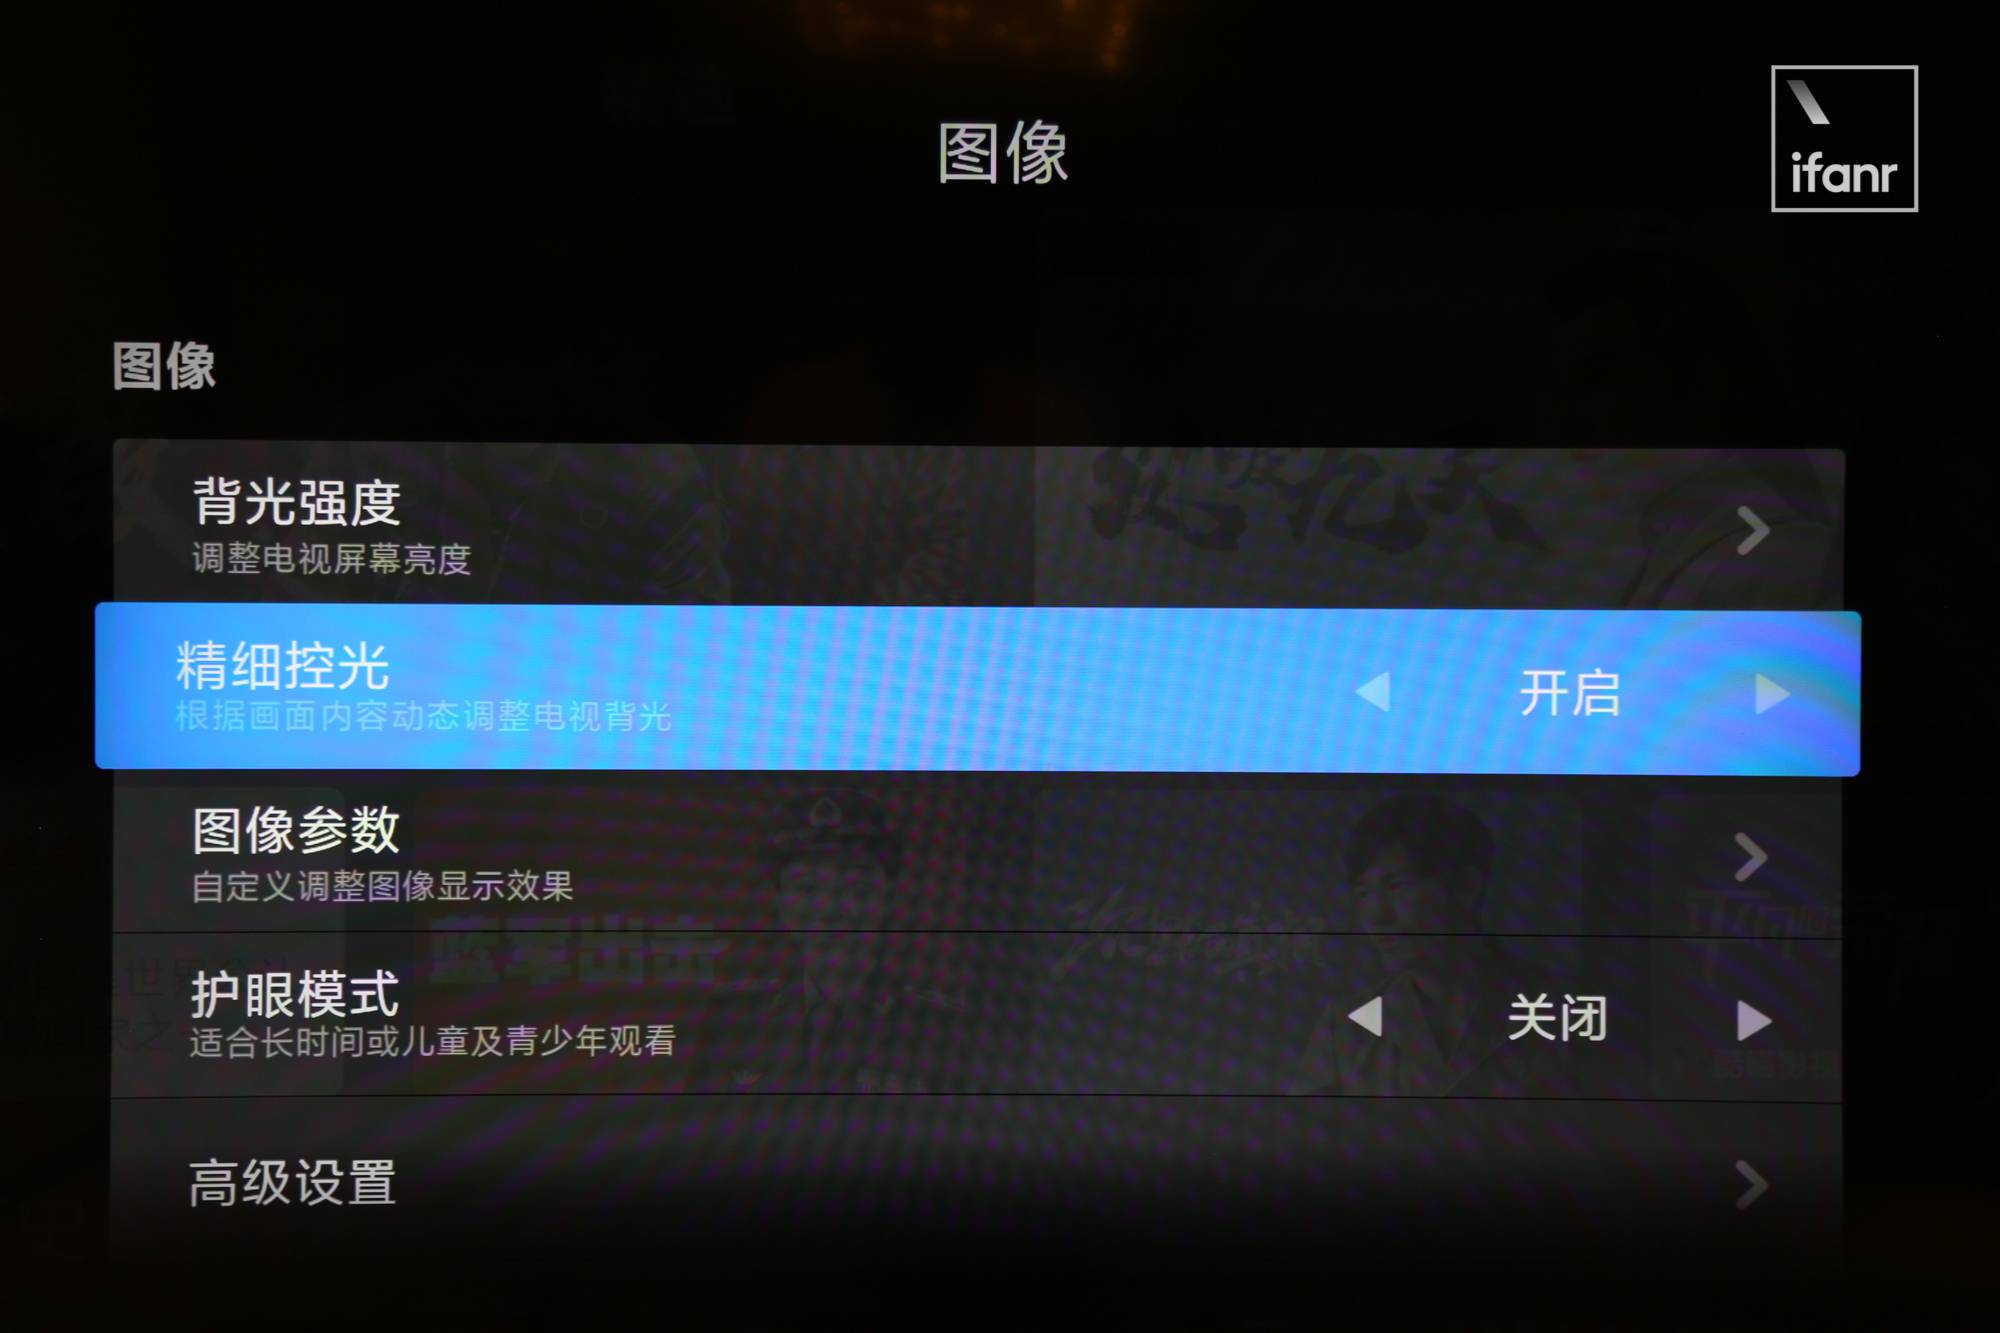 IMG 8859 7 - Ho provato la prima TV 8K di Xiaomi sul posto. Come si è comportata la “Super Cup” da 82 pollici?